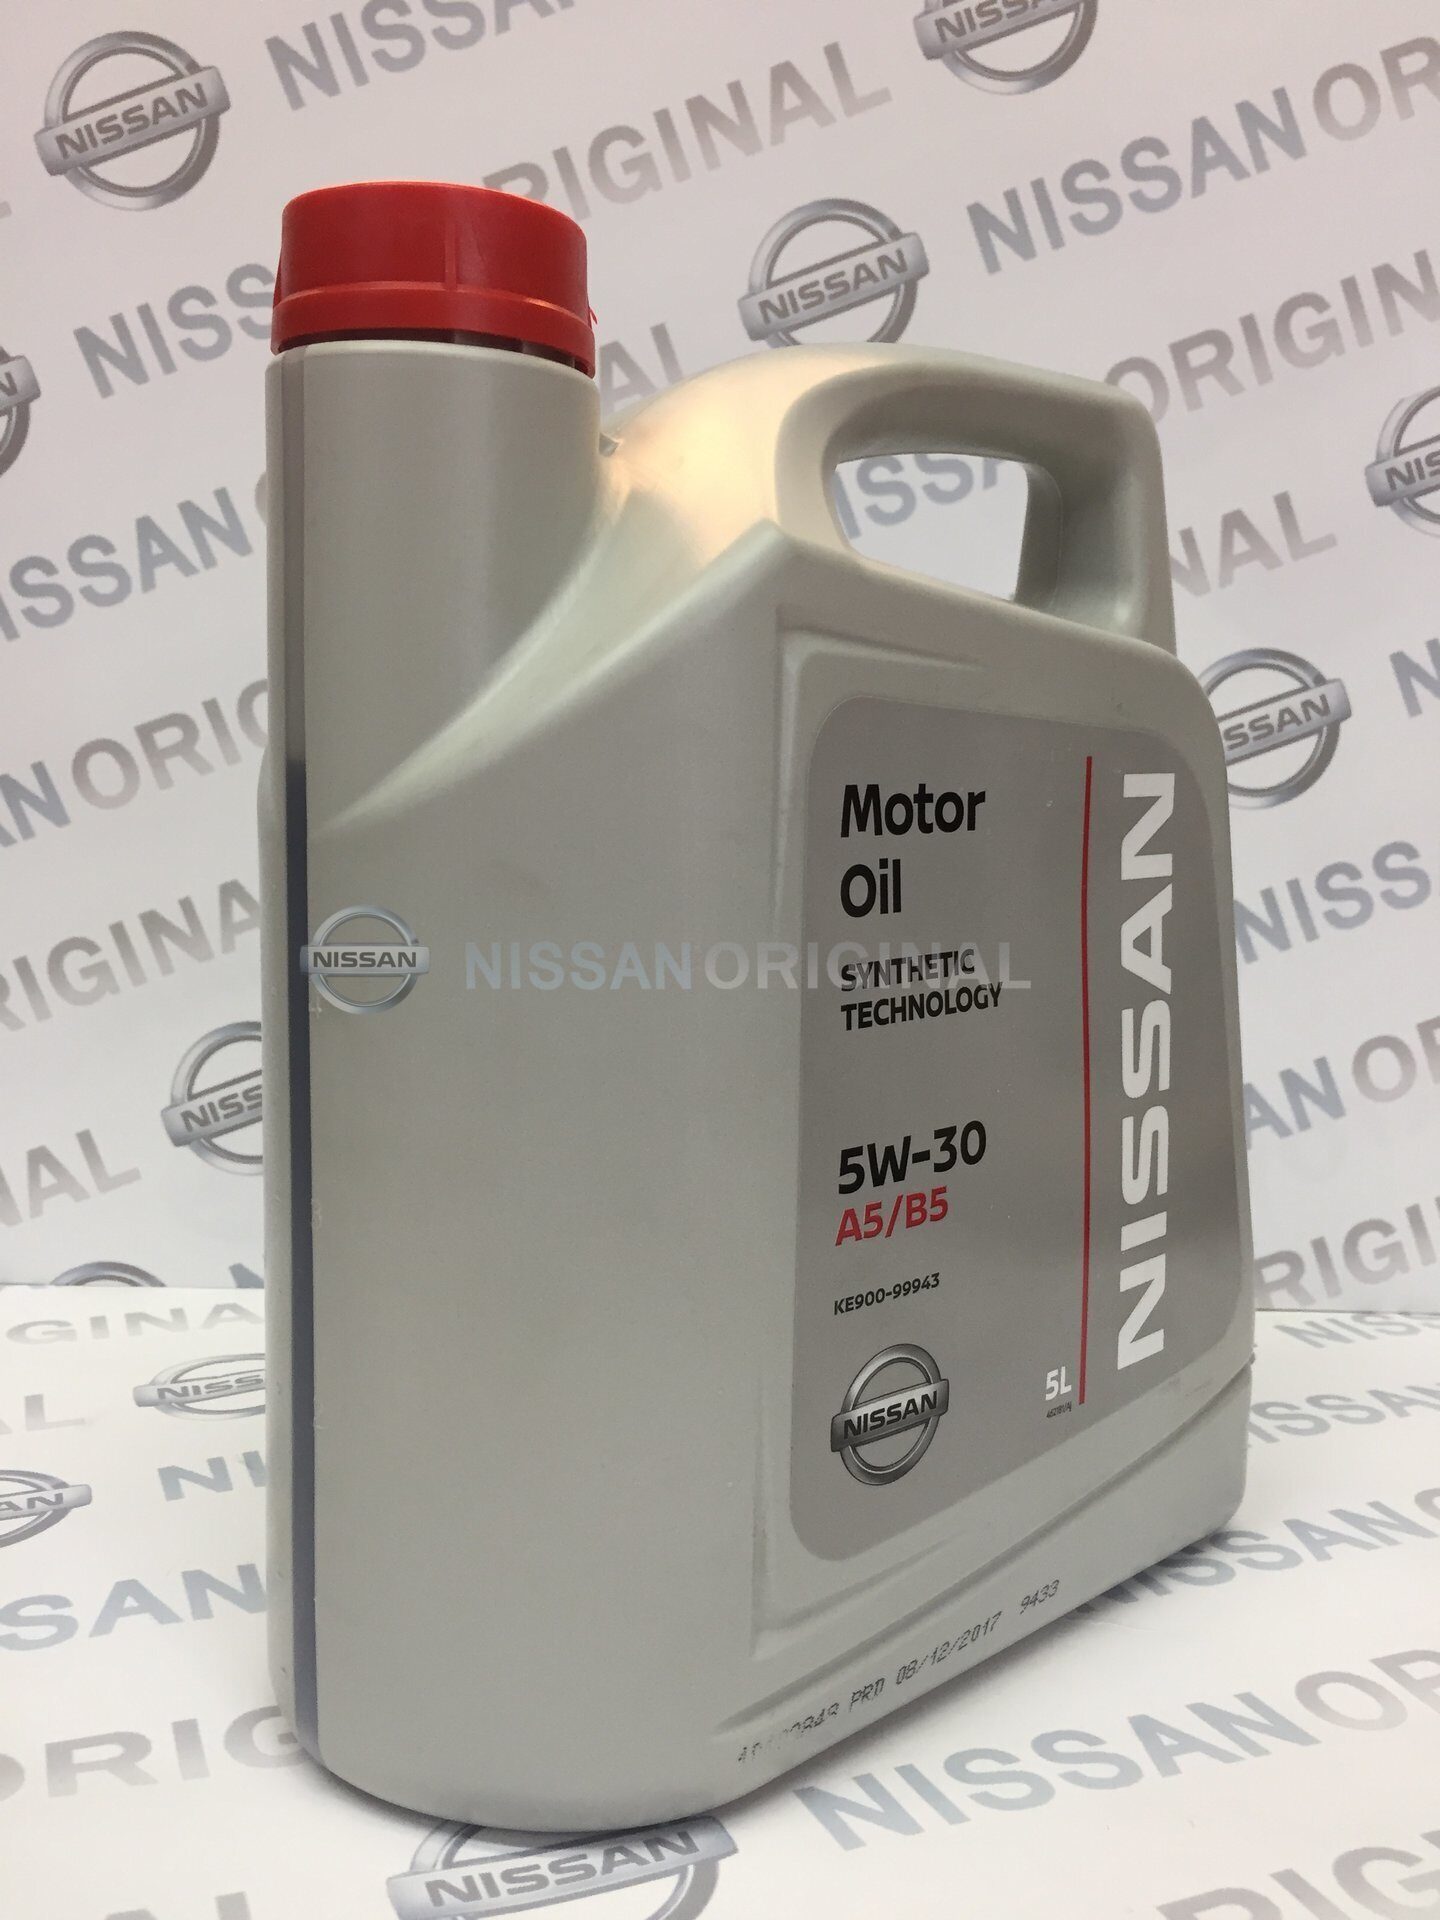 Nissan ke900-99943. Проверочный код масла Ниссан. Моторное масло для ниссан альмера